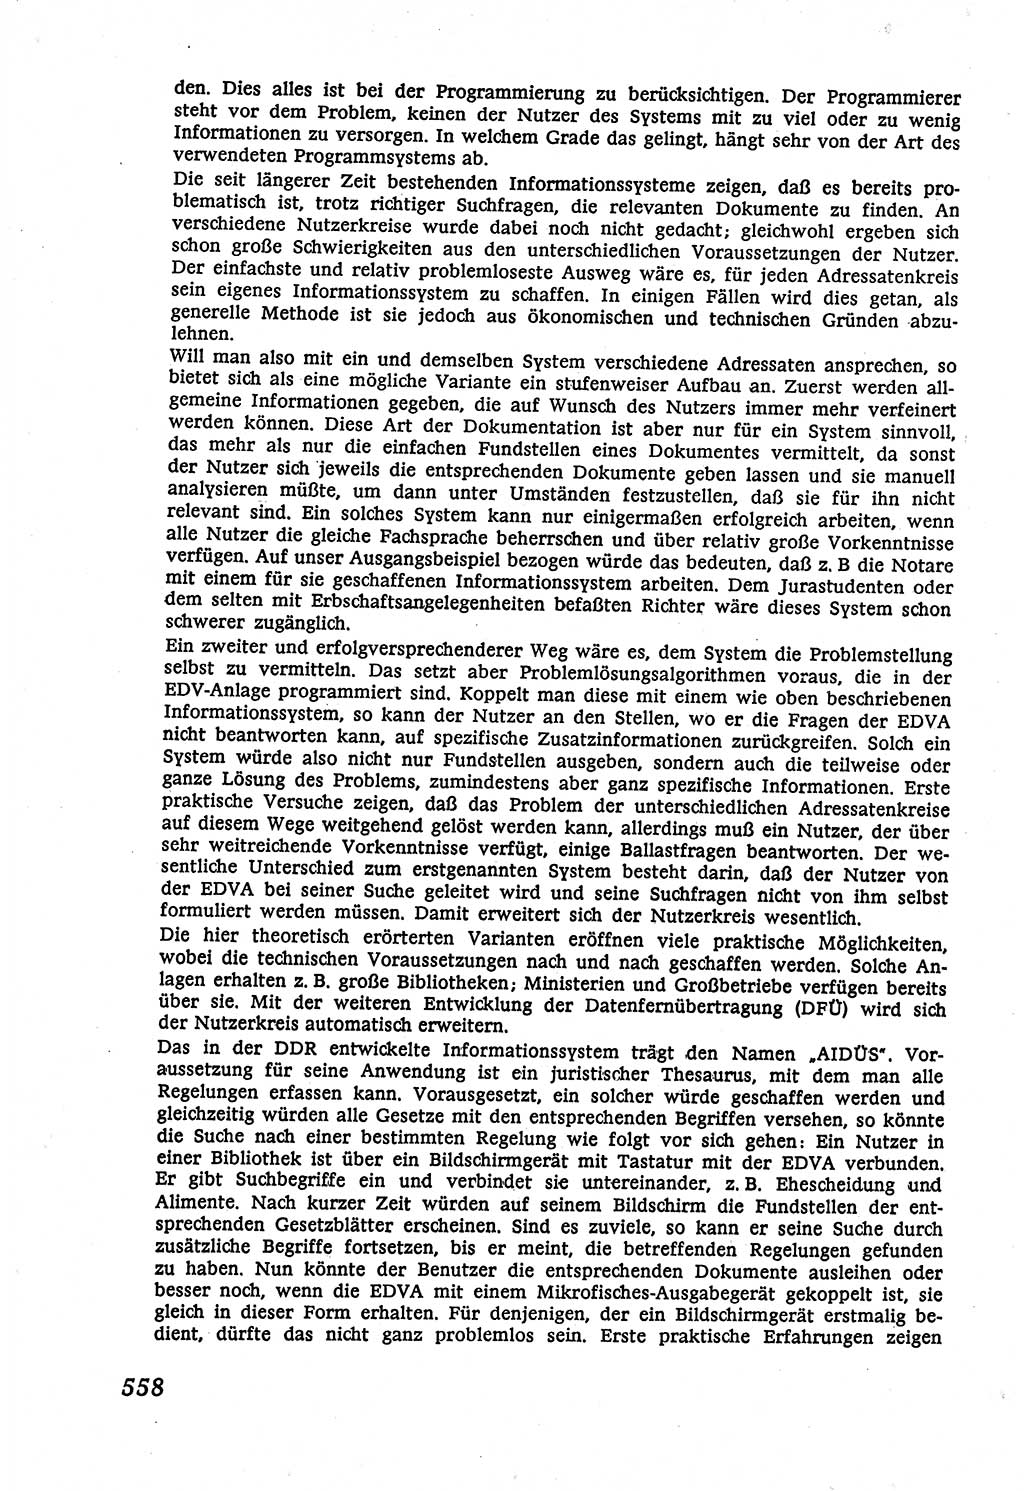 Marxistisch-leninistische (ML) Staats- und Rechtstheorie [Deutsche Demokratische Republik (DDR)], Lehrbuch 1980, Seite 558 (ML St.-R.-Th. DDR Lb. 1980, S. 558)